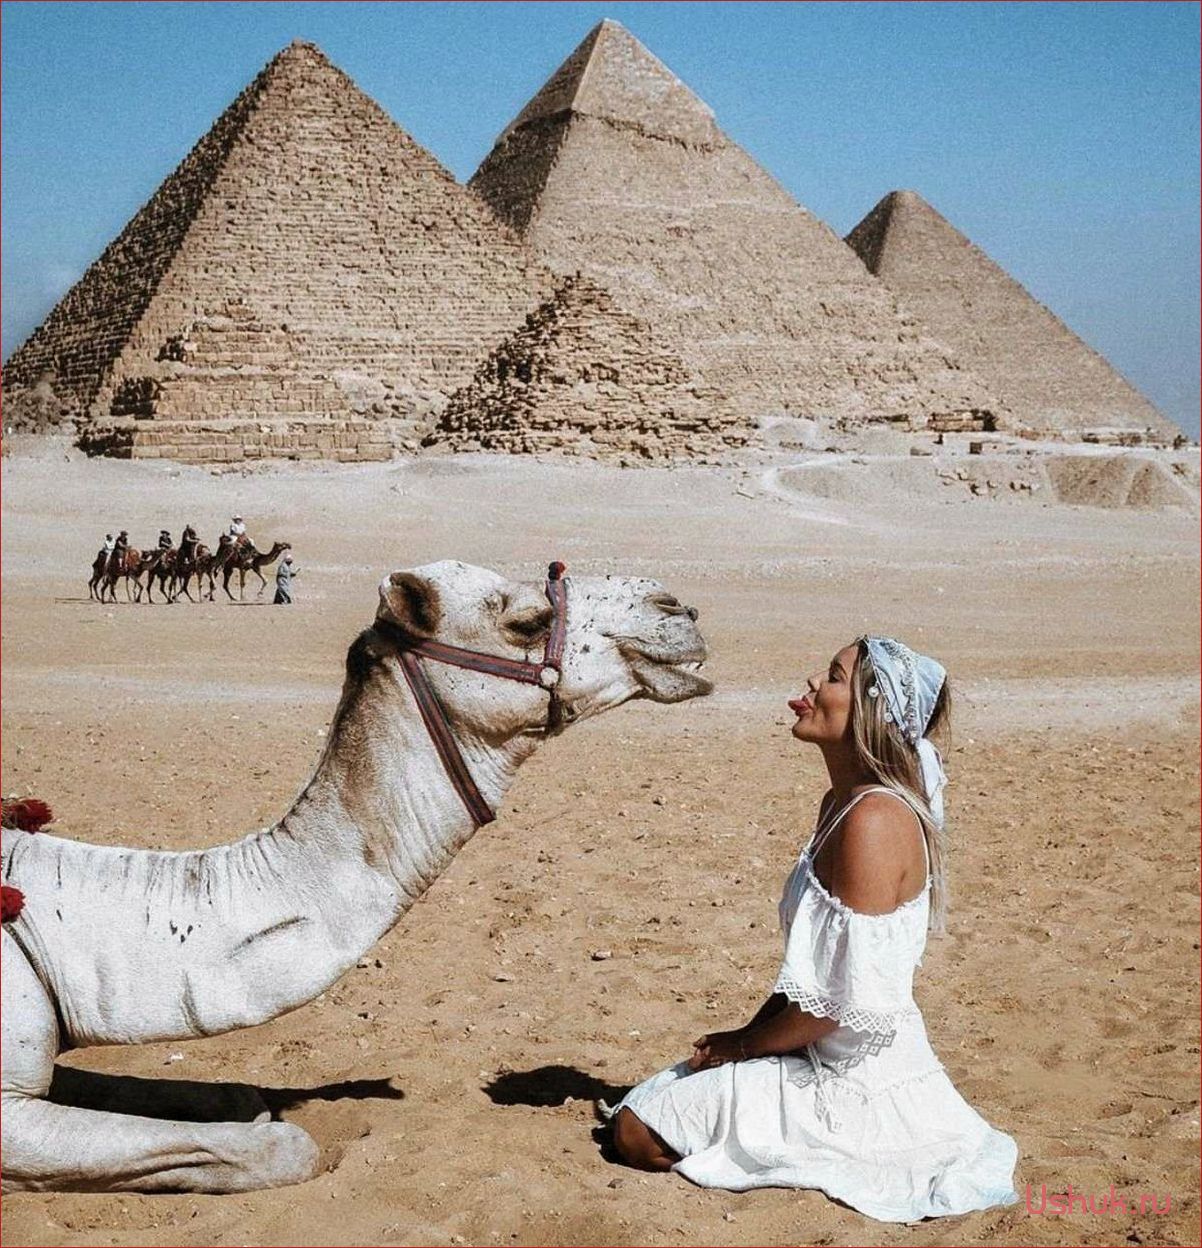 Пирамиды туризм и путешествия — открывая тайны древних сооружений и привлекательностью для путешественников в эпоху глобальных приключений